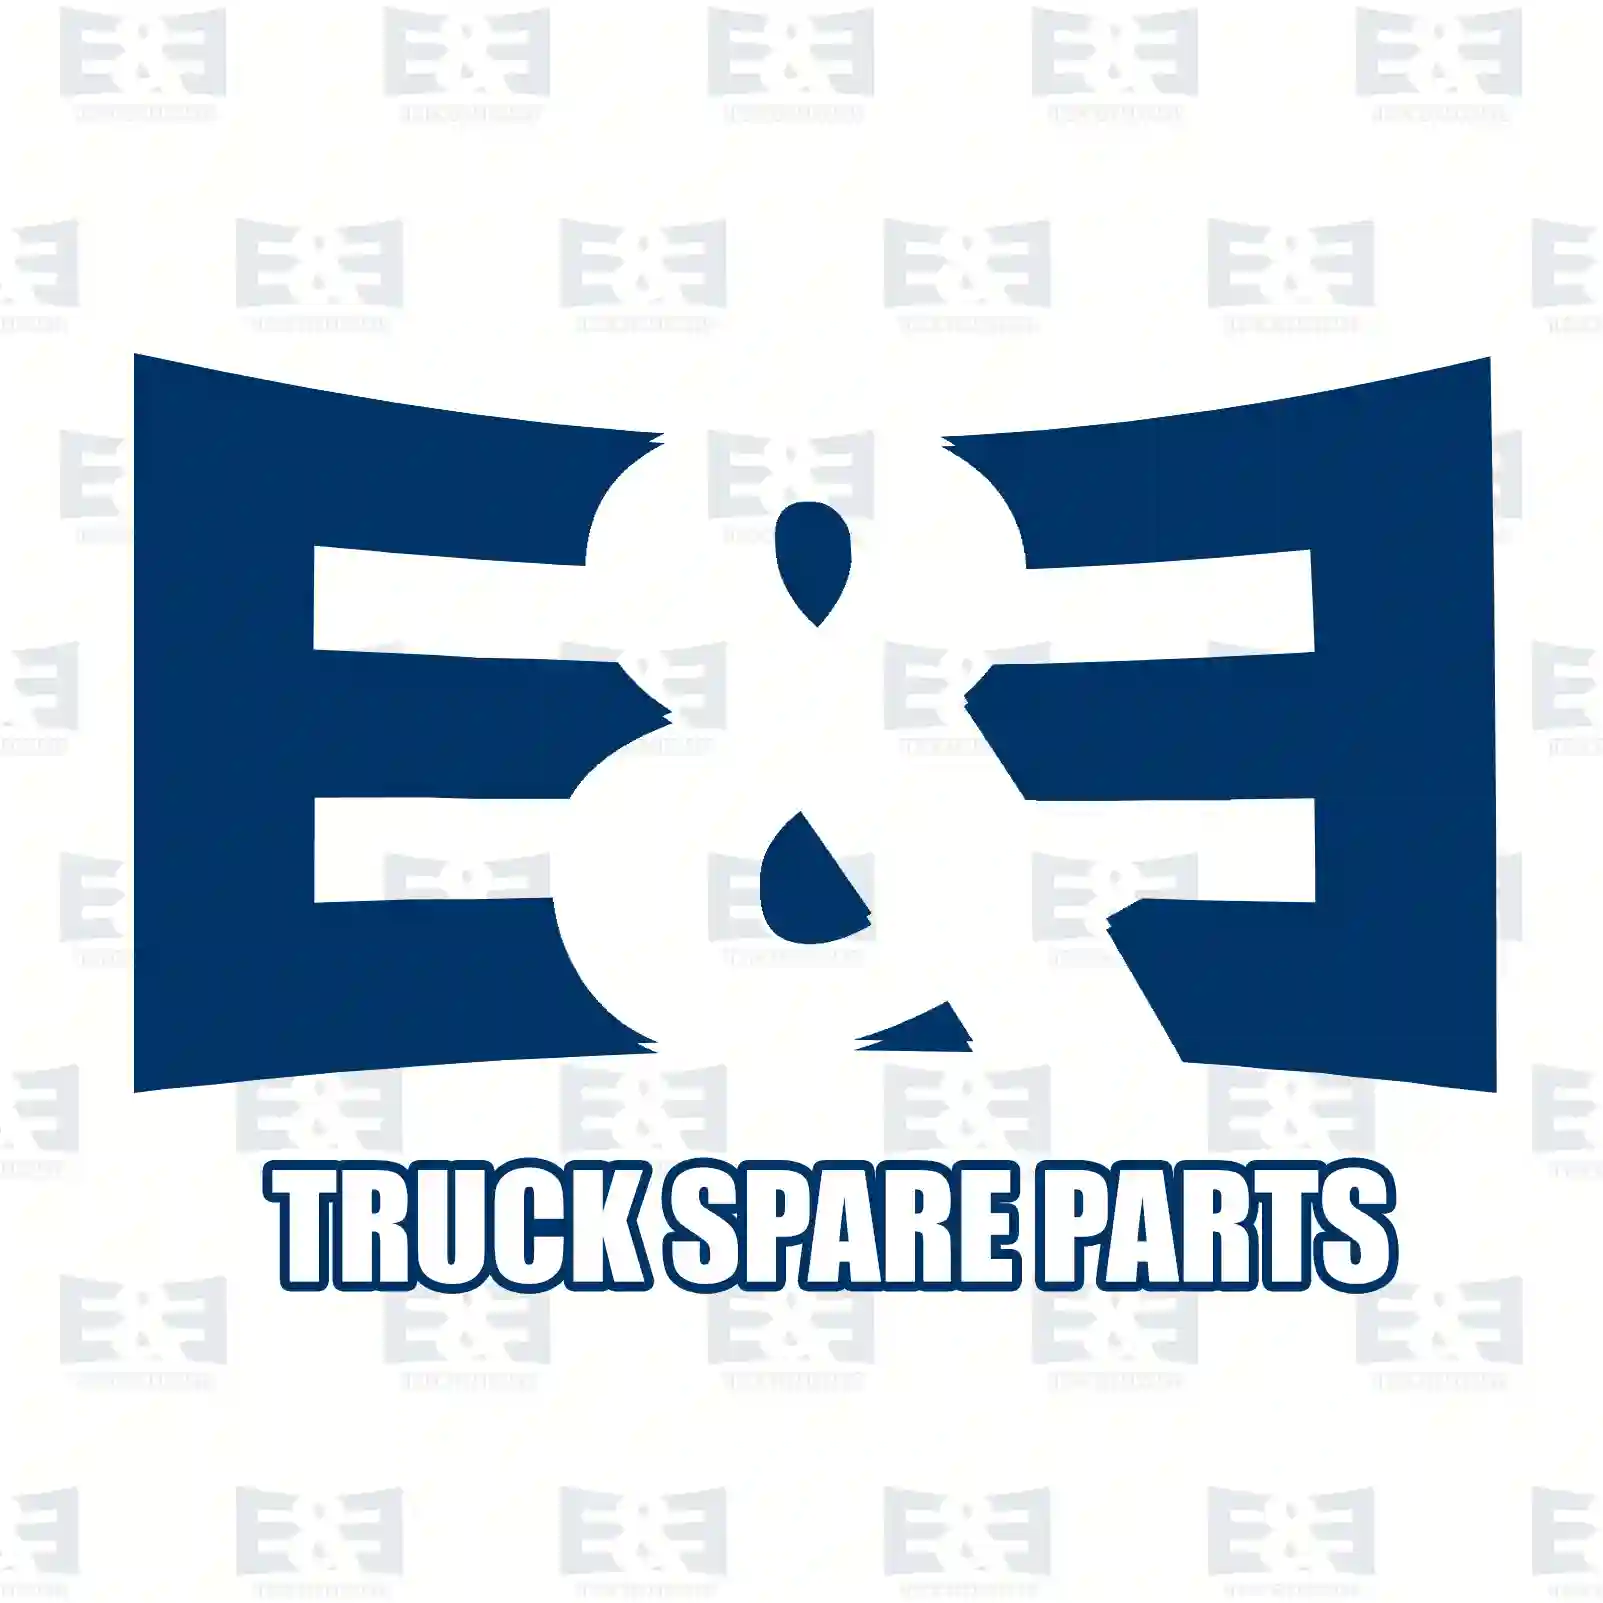 Oil seal, 2E2279257, 1318388, 13183884, 1443289, 378620, 3786209, ZG02621-0008 ||  2E2279257 E&E Truck Spare Parts | Truck Spare Parts, Auotomotive Spare Parts Oil seal, 2E2279257, 1318388, 13183884, 1443289, 378620, 3786209, ZG02621-0008 ||  2E2279257 E&E Truck Spare Parts | Truck Spare Parts, Auotomotive Spare Parts